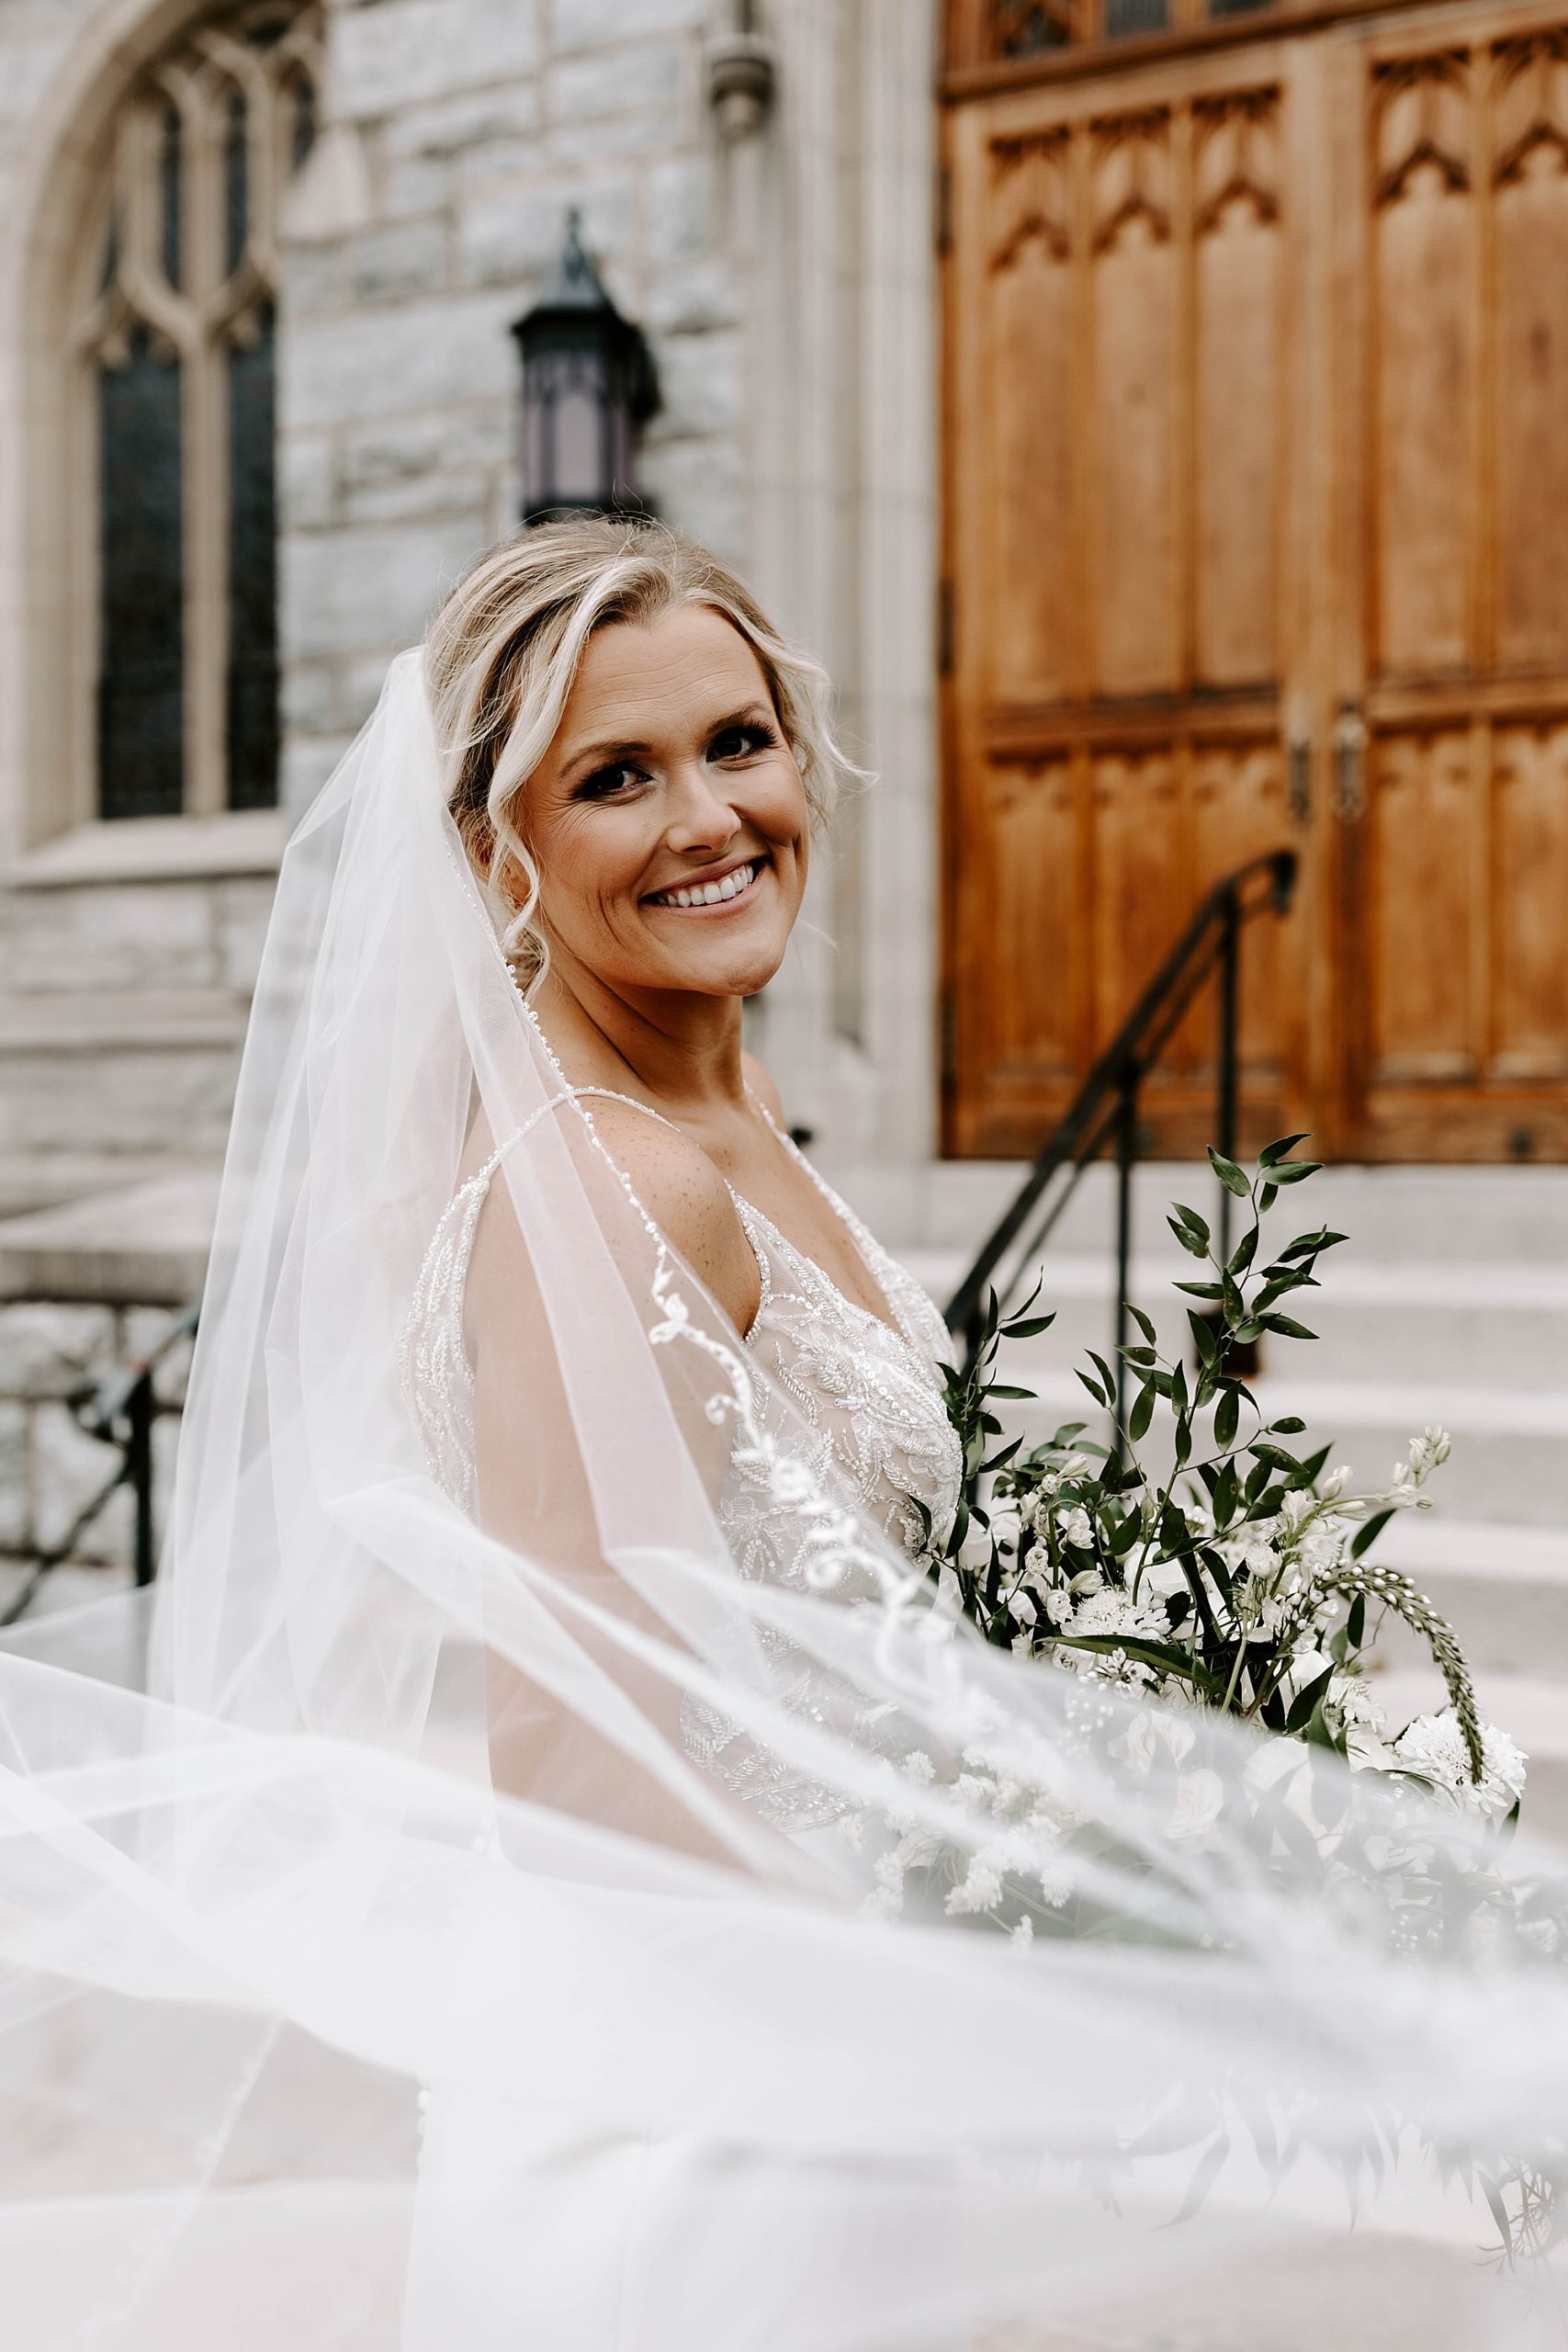 Rachel Wehan Photography, wedding photographer in Pittsburgh